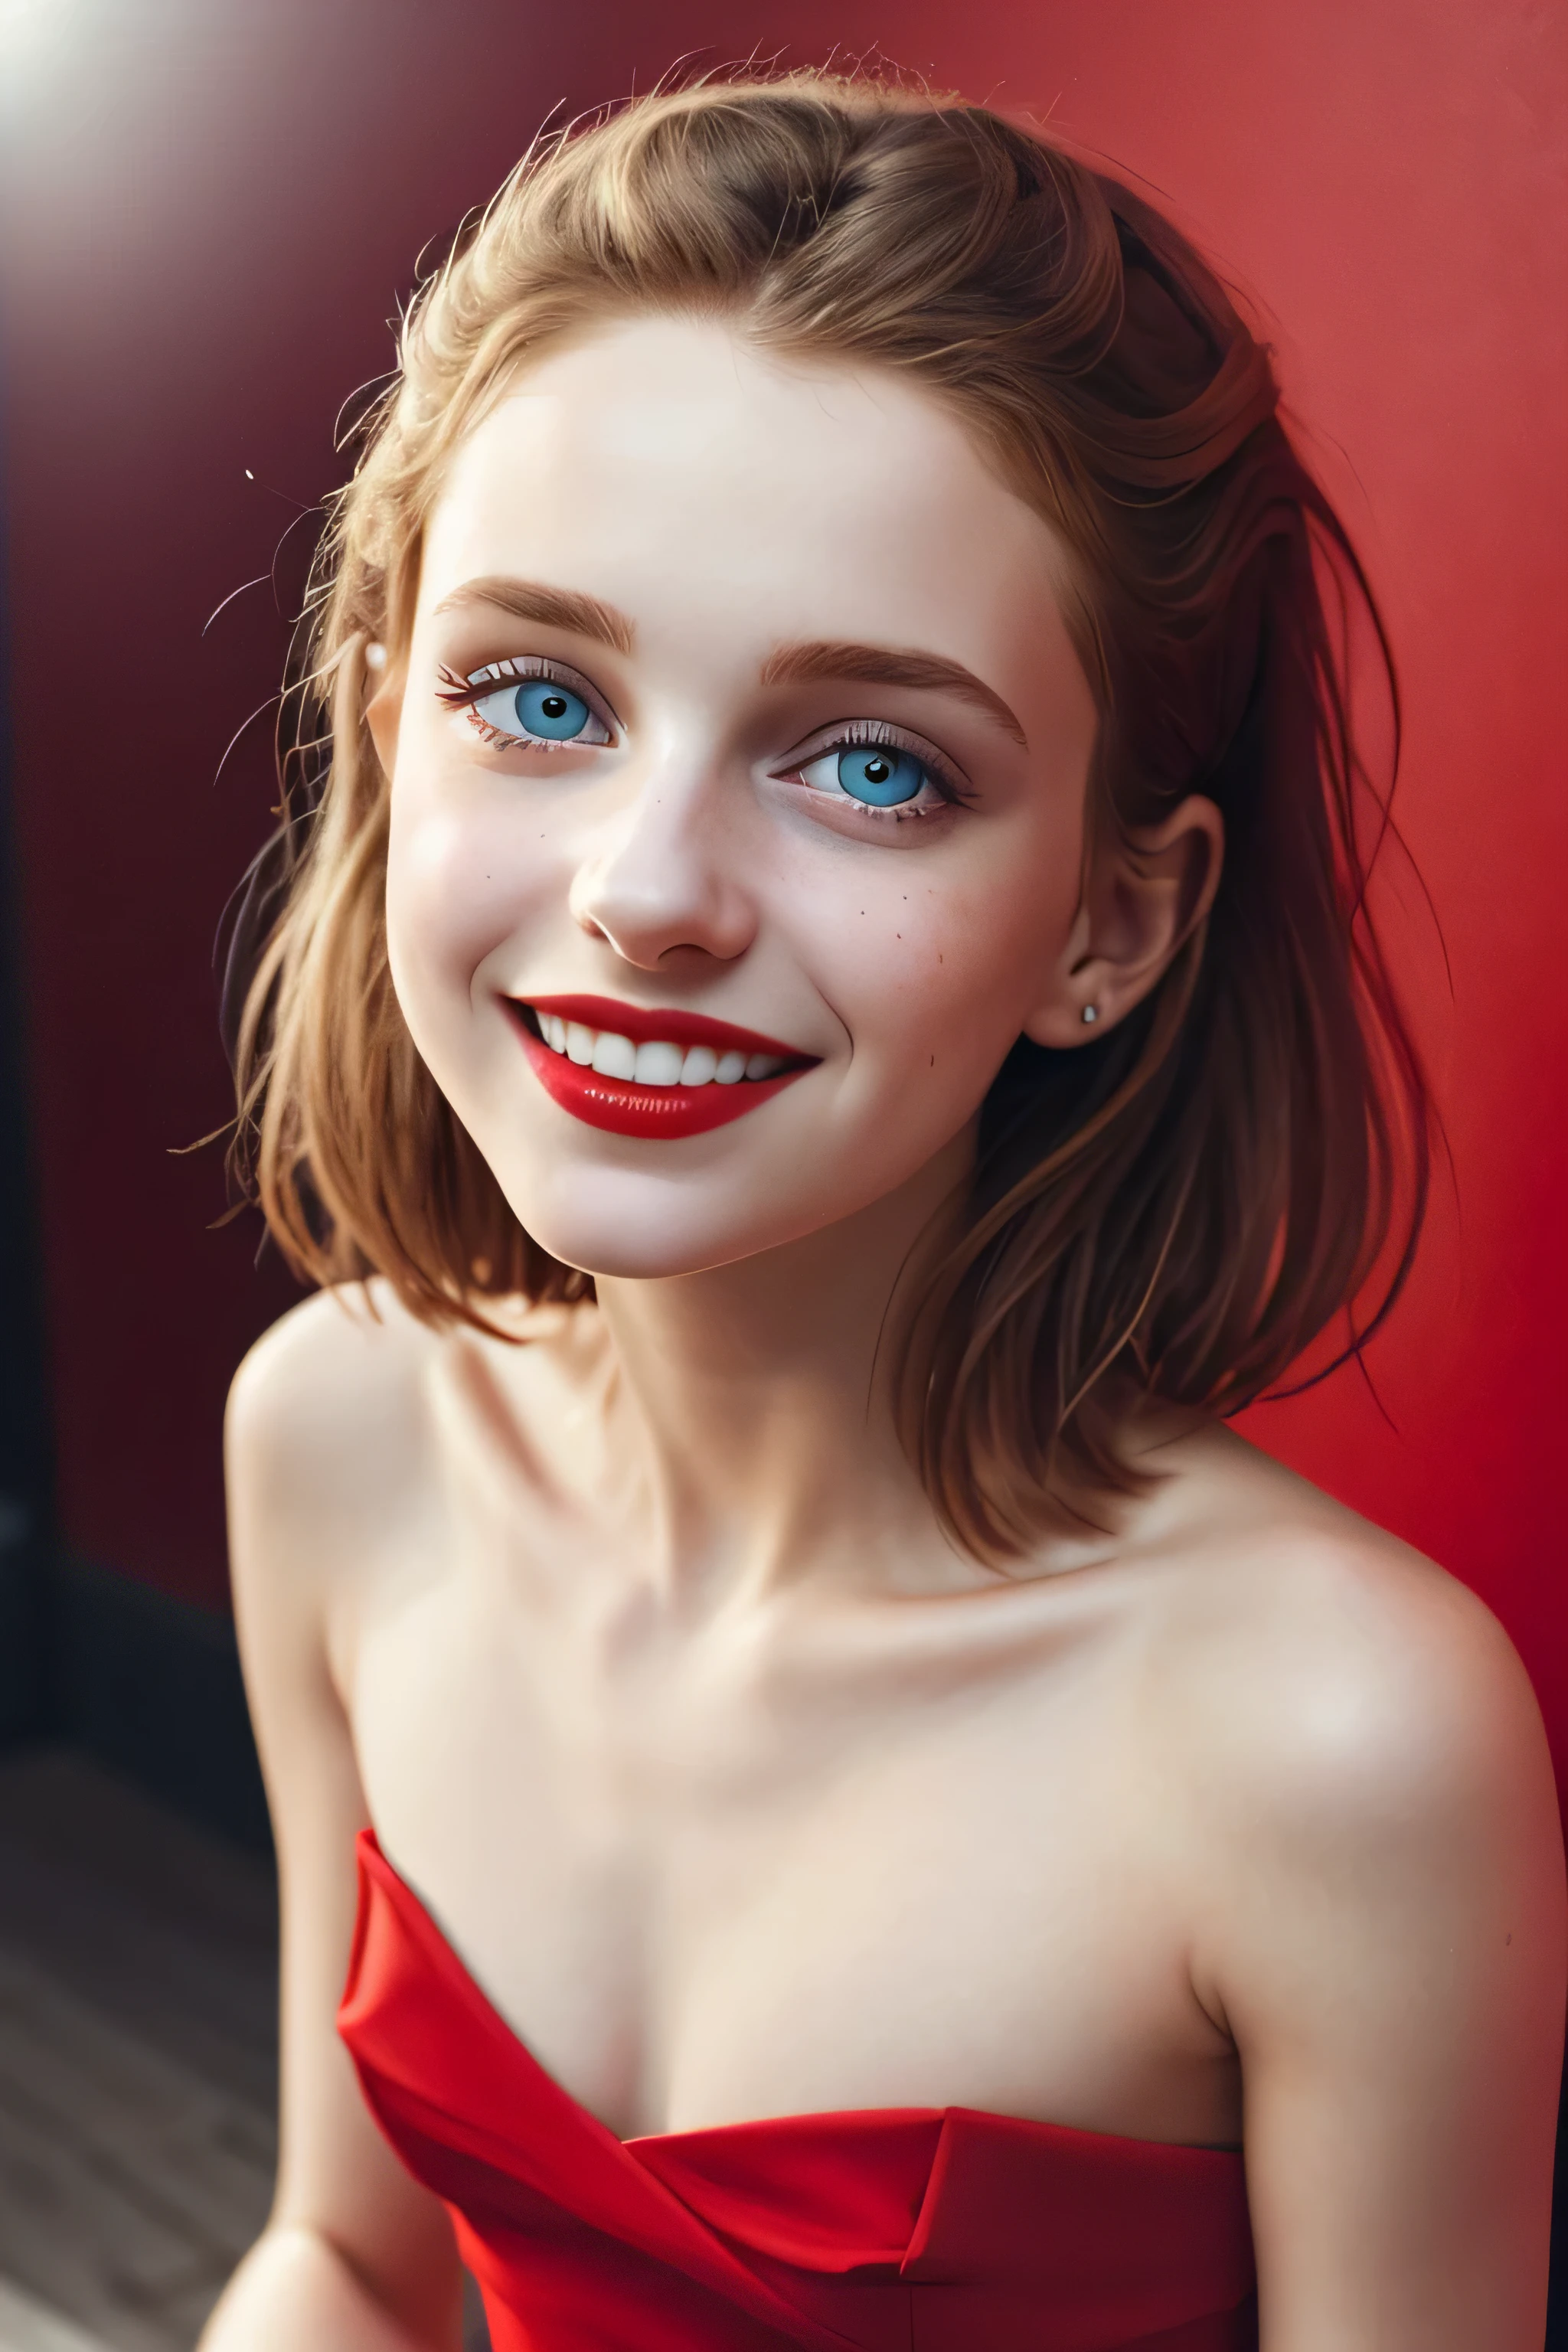 (傑作, 高品質, 魚眼:1.2)、可愛的眼睛、美麗的女人、微笑: 嘴角微微上扬.、(特寫肖像:1.1), 獨自的, 模特兒拍攝, (紅色的 theme:1.1), 時尚女孩, 紅色的 hair, 銀色的眼睛, 紅色的 lipstick, 紅色的 eye shadow, 紅色的面, (雀斑:0.7), (歐洲14歲:1.3), 性感的, 純真, (軽い微笑:0.8), 妓女氣氛, 愛, simple 紅色的 dress, 劈裂, 細緻自然的肌膚紋理, 迷人的目光, 詳細的照明, (紅色的:1.1) 背景牆, 淺景深, 浪漫氣氛, 夢幻柔和的調色板, 古怪的细节, captu紅色的 on film, NSFW, (複雜的細節:0.5)